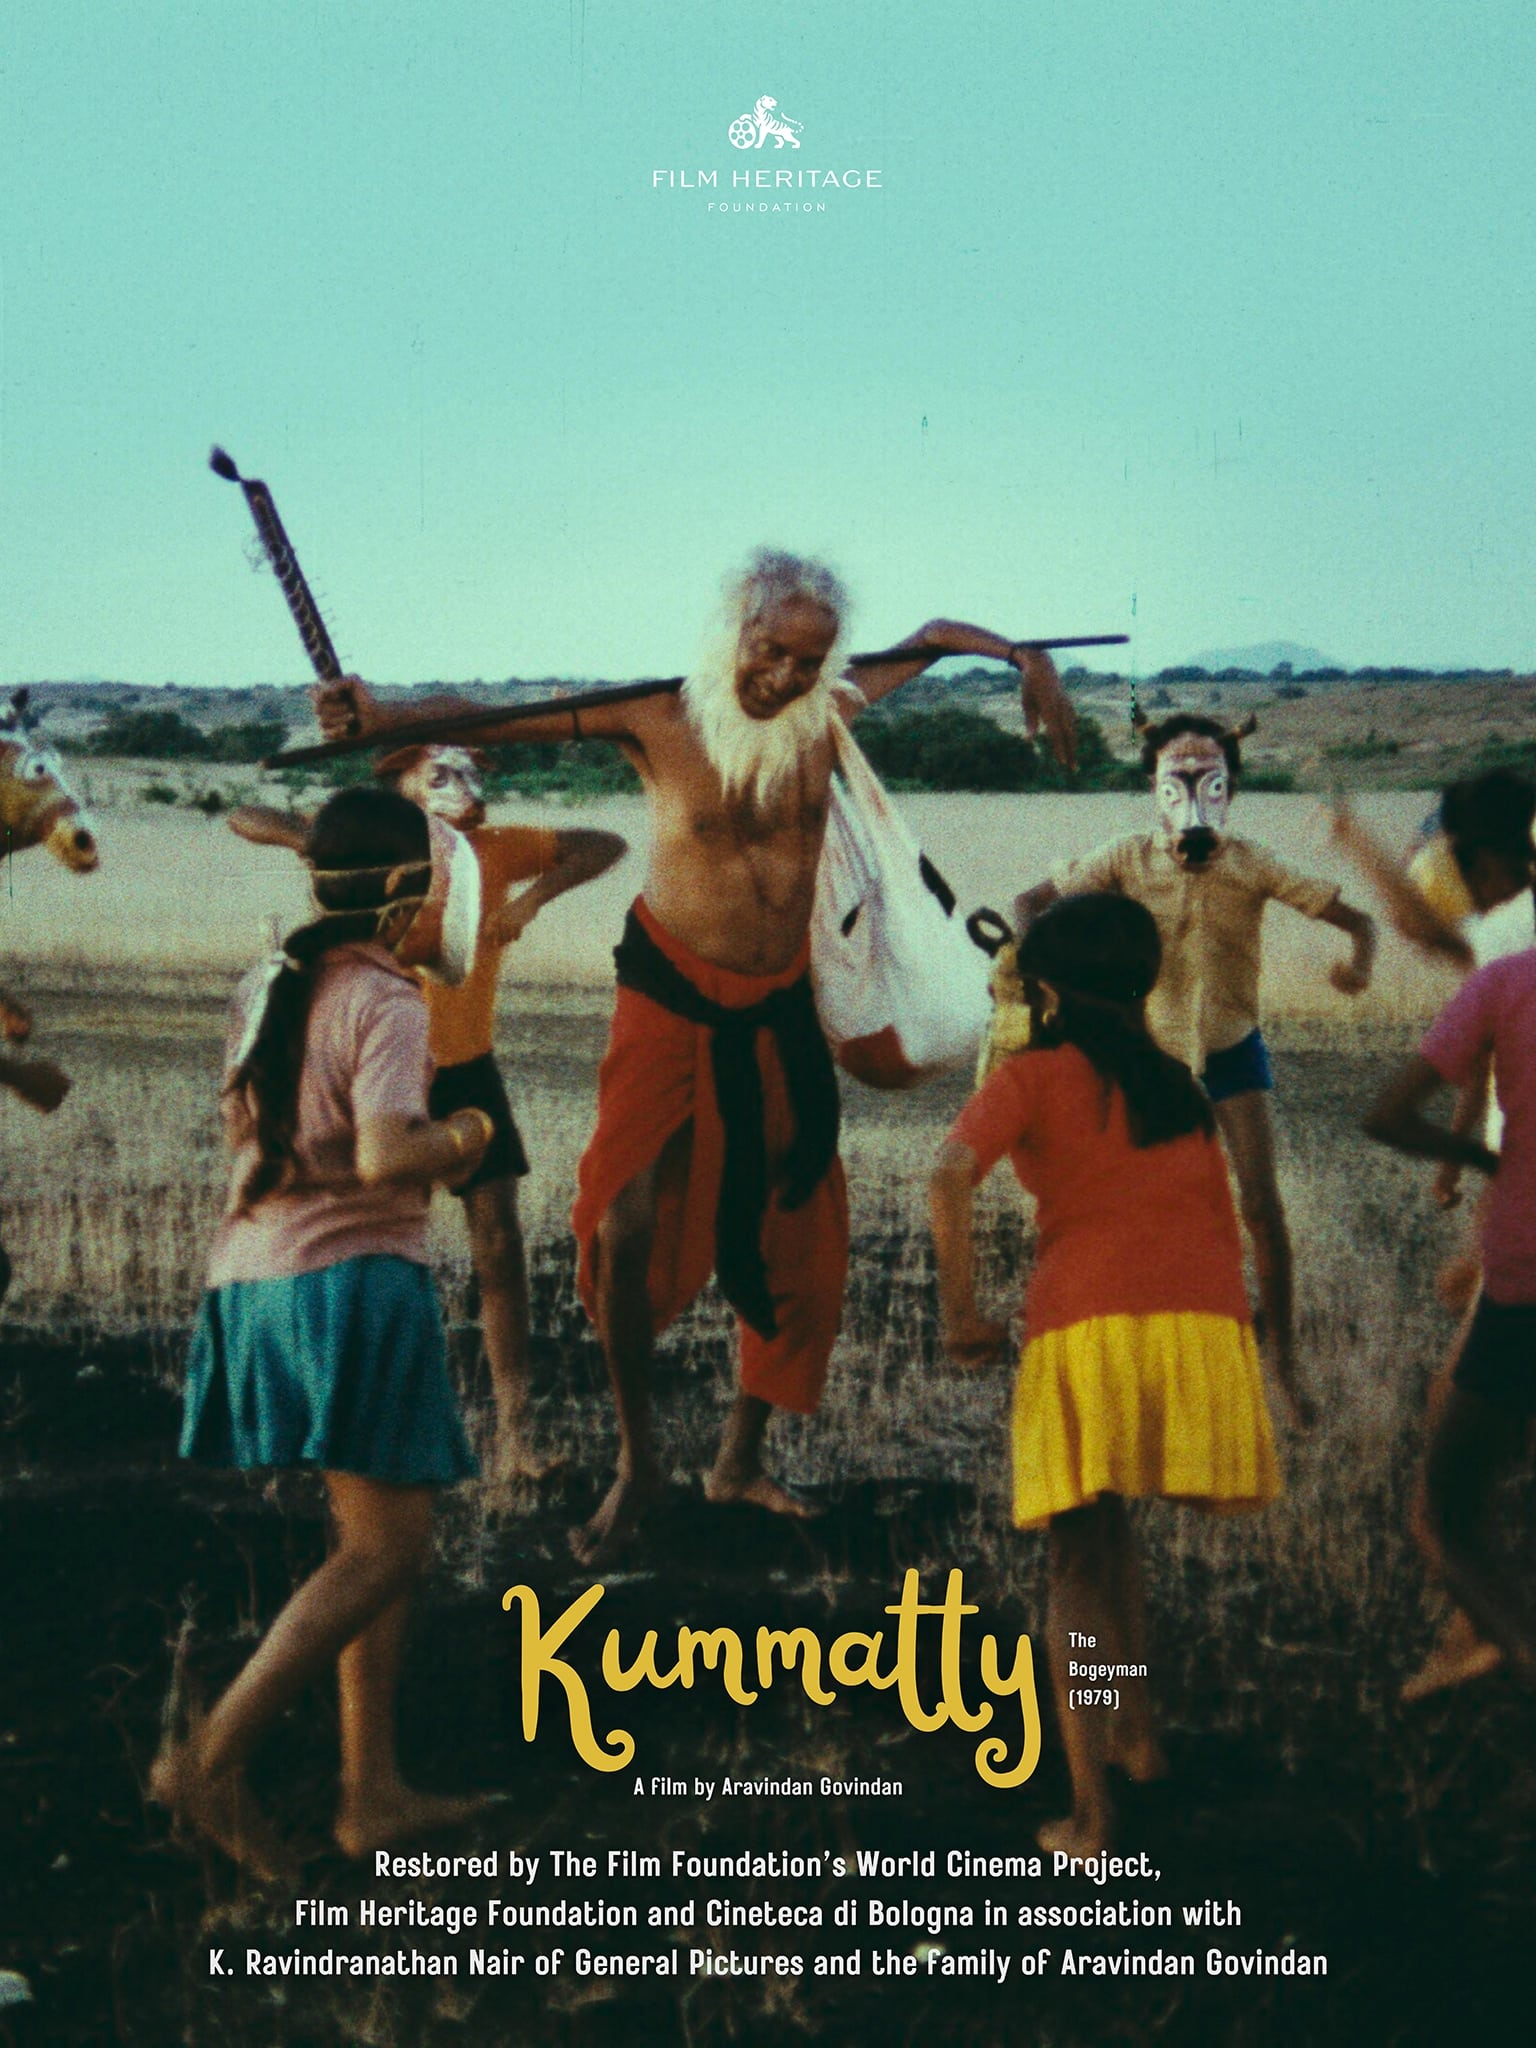 KUMMATTY (EL HOMBRE DEL SACO)